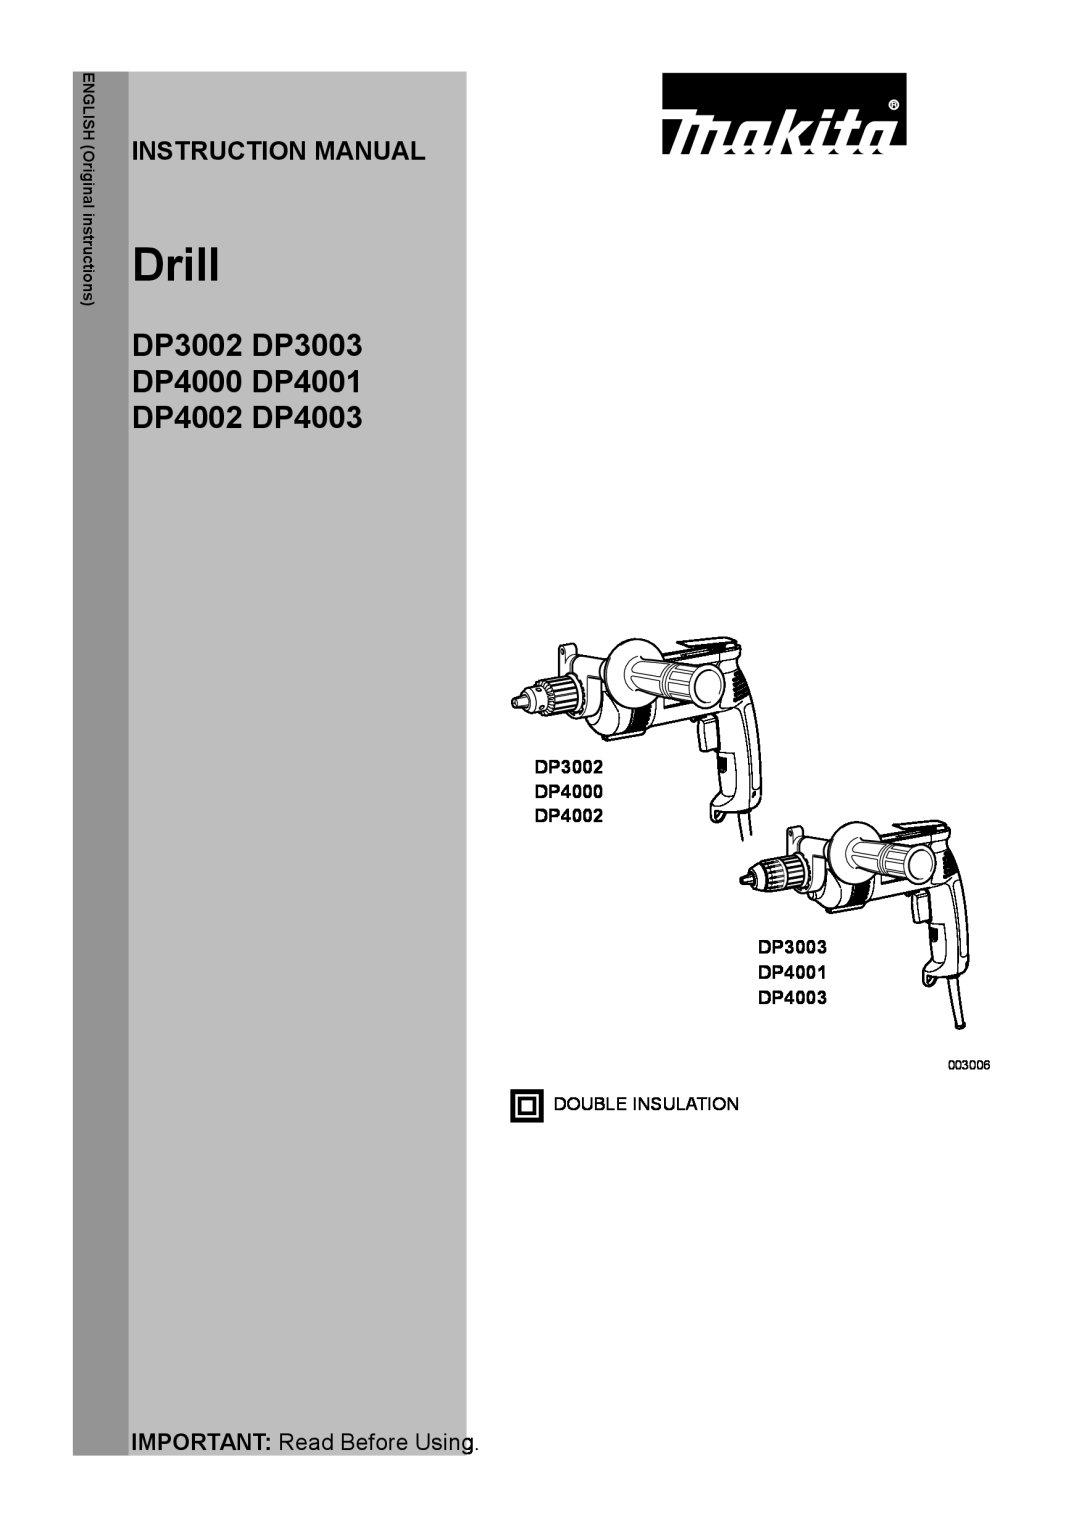 Makita instruction manual Instruction Manual, Drill, DP3002 DP3003 DP4000 DP4001 DP4002 DP4003, 003006 